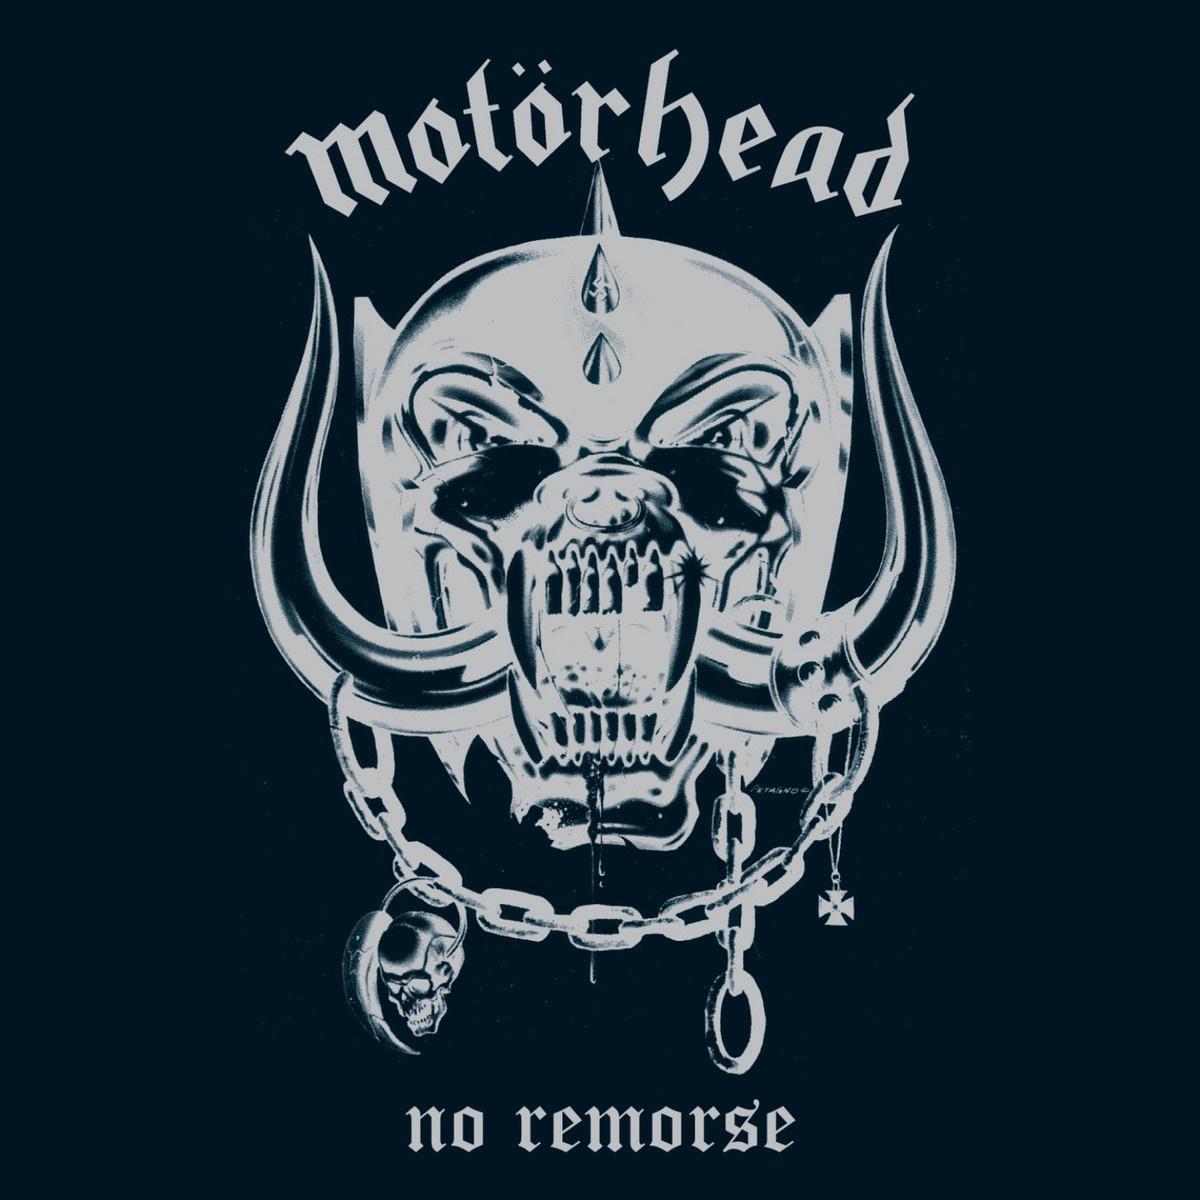 Ace of Spades歌词 歌手Motörhead-专辑No Remorse-单曲《Ace of Spades》LRC歌词下载